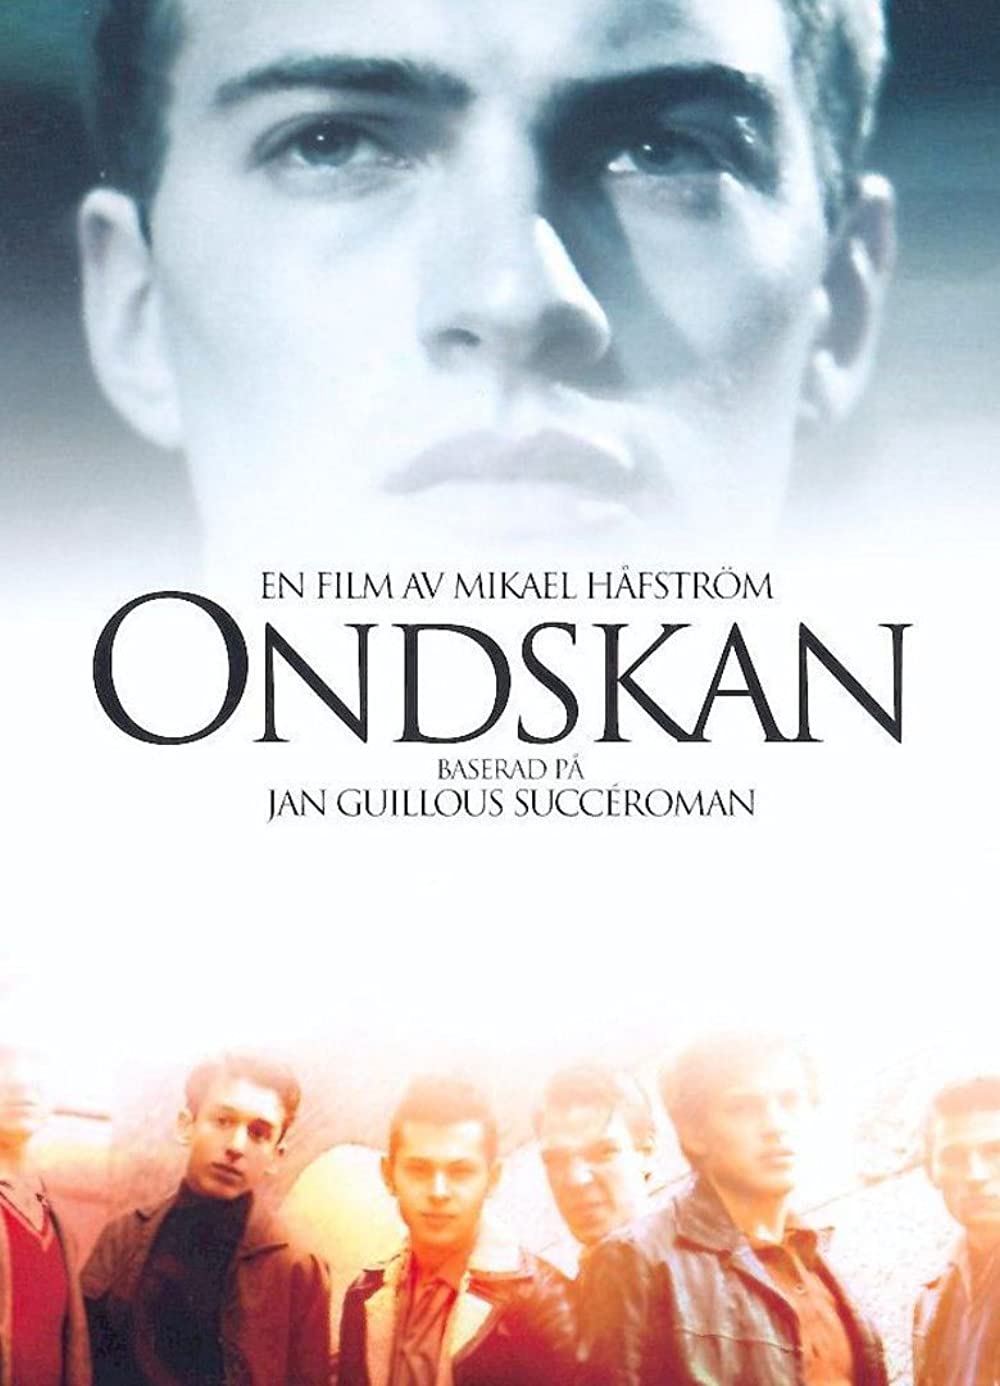 ดูหนังออนไลน์ฟรี ดูหนังใหม่ ONDSKAN (2003) เกมส์ชีวิตลิขิตลูกผู้ชาย